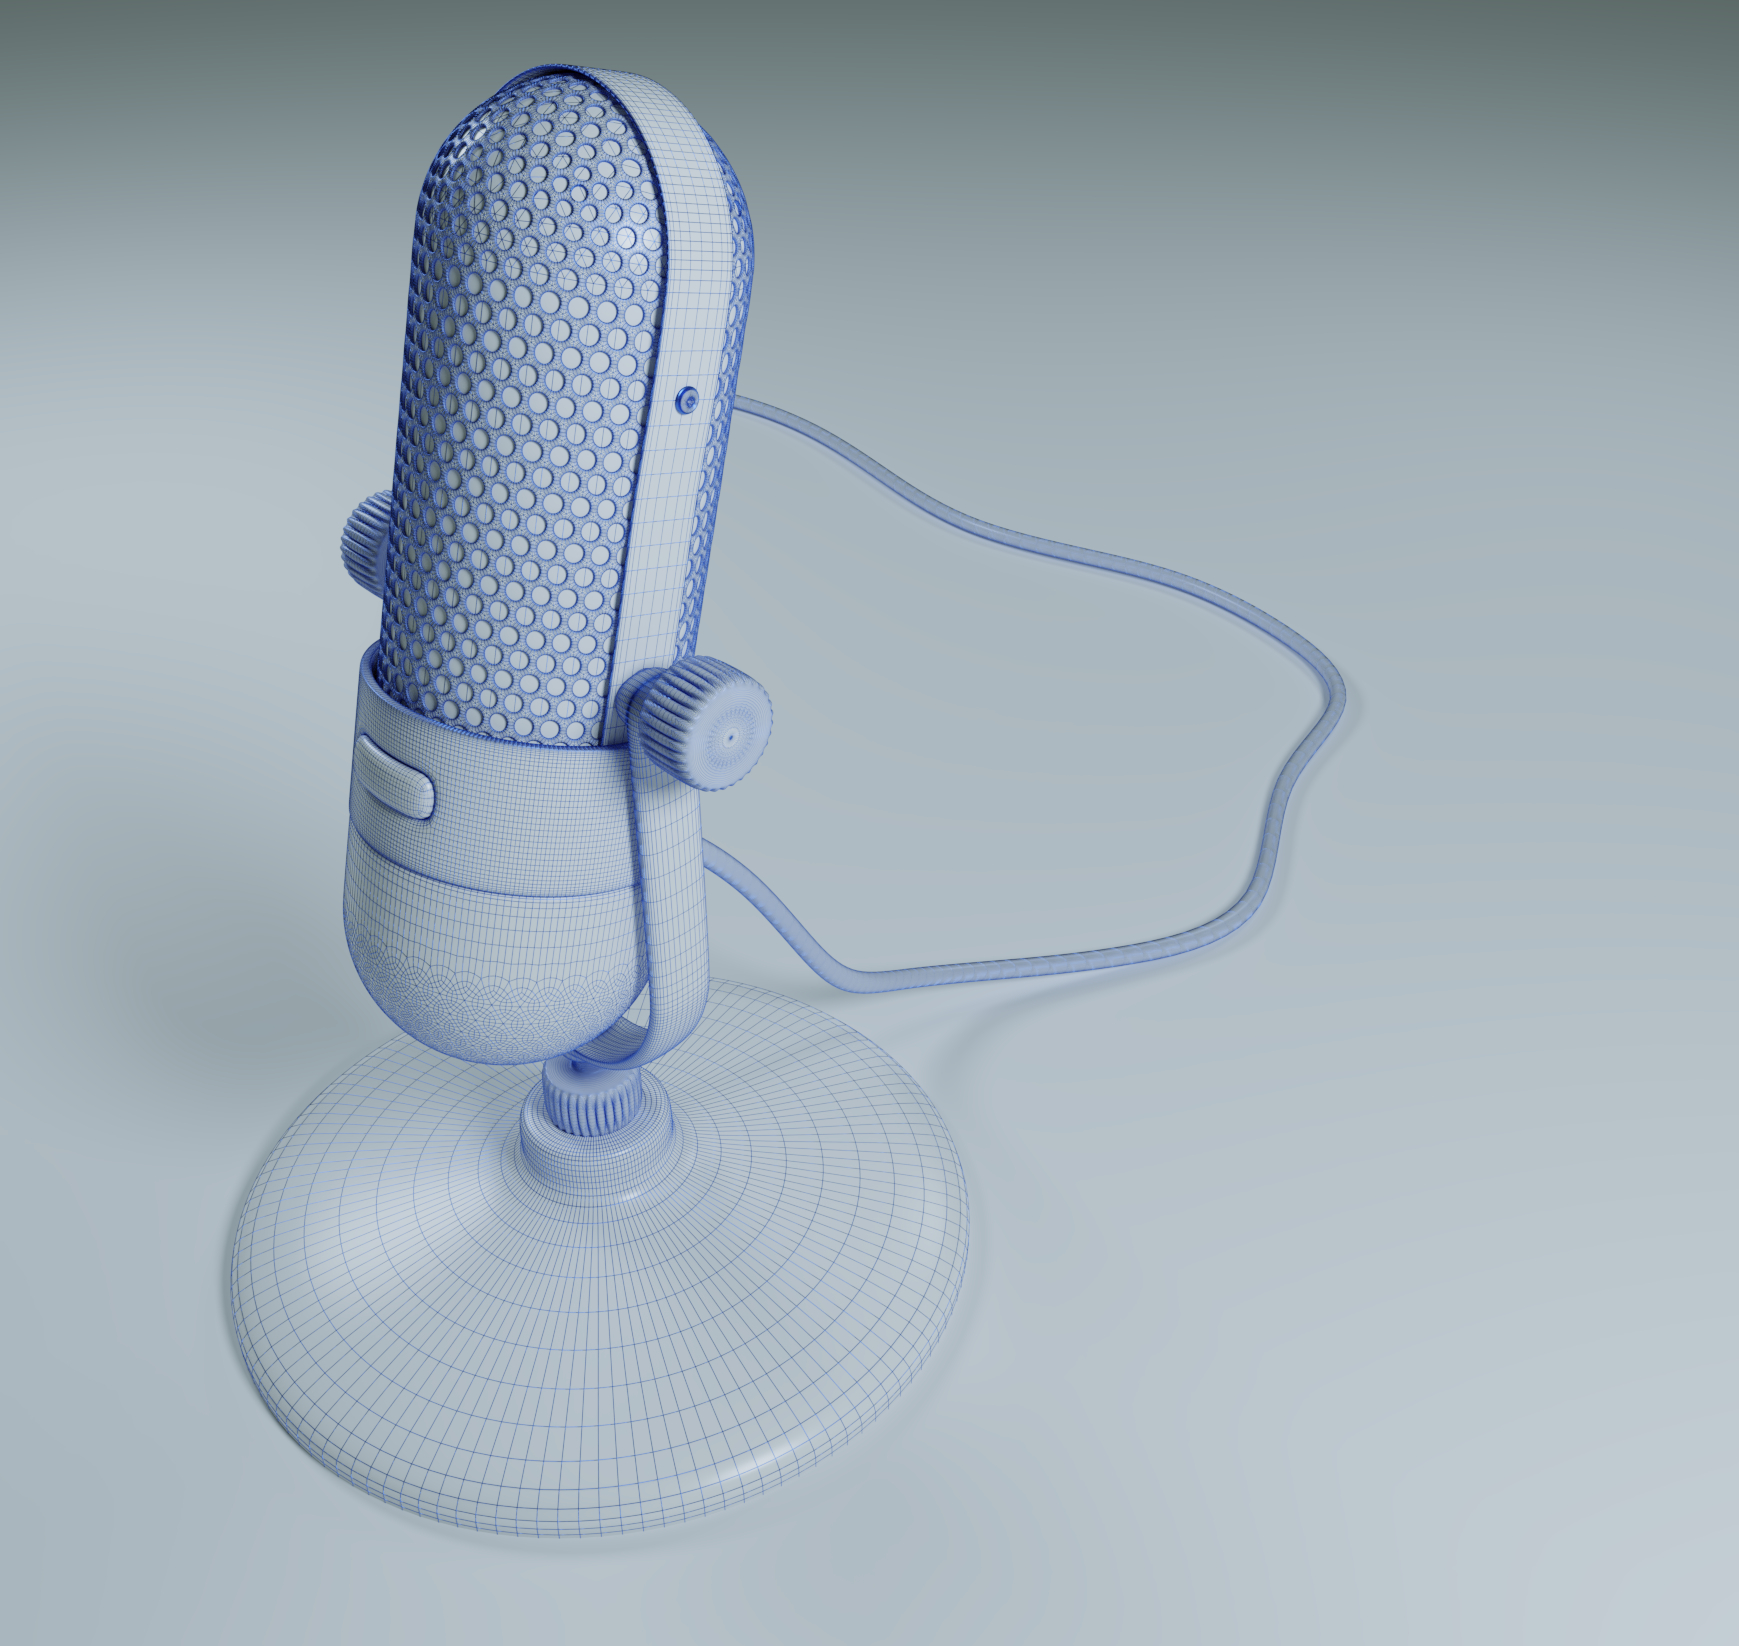 एक माइक्रोफोन Blender cycles render में प्रस्तुत छवि